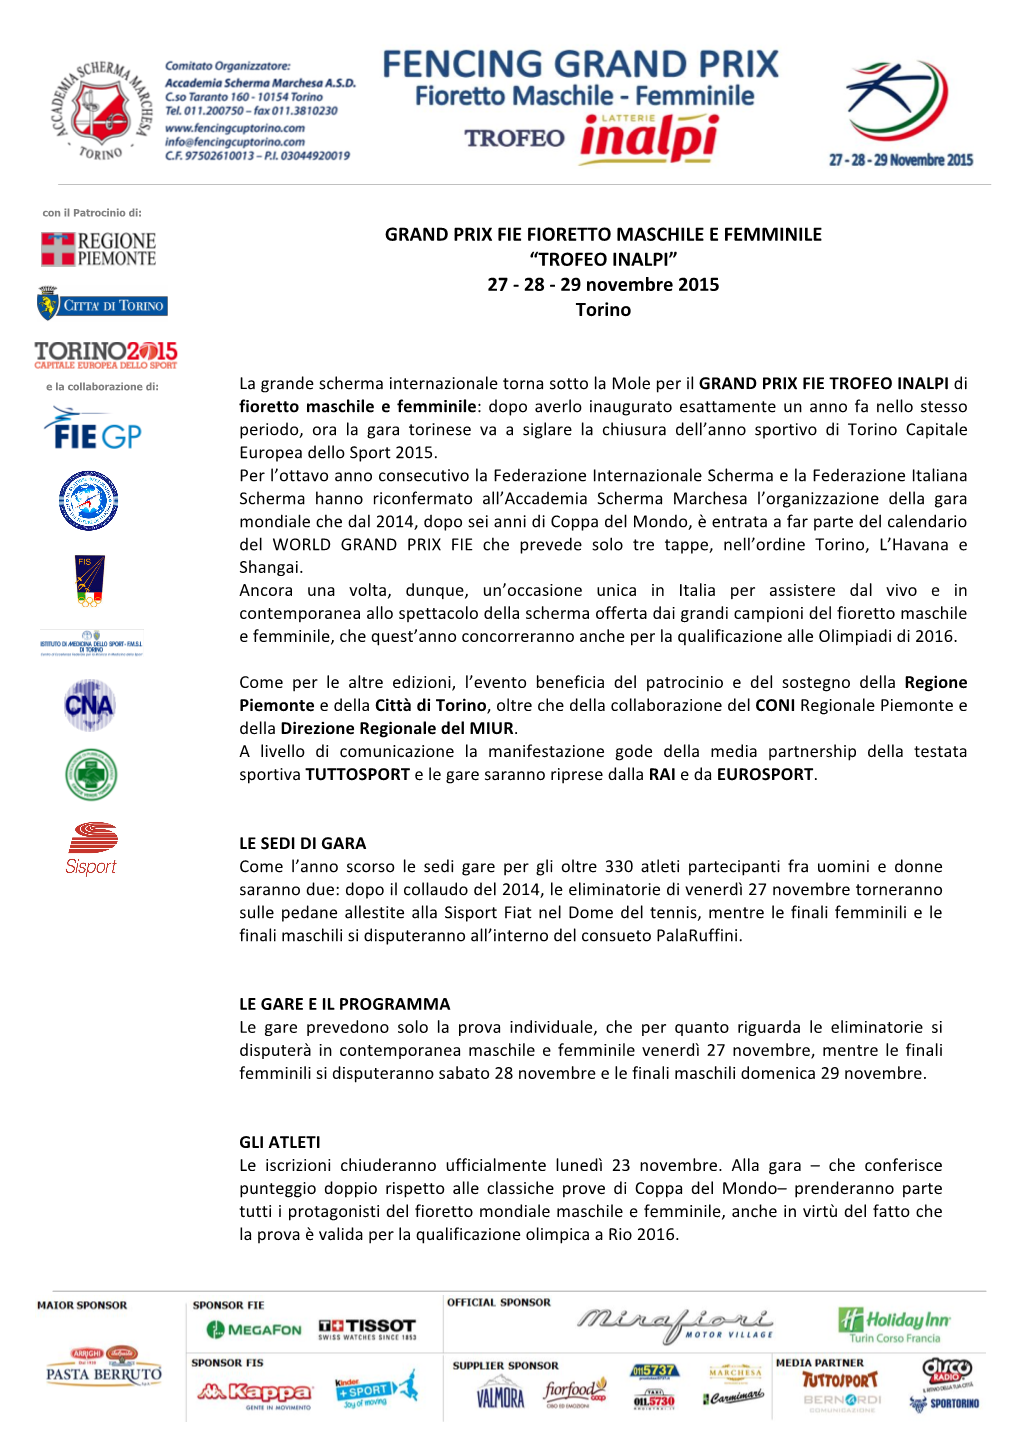 GRAND PRIX FIE FIORETTO MASCHILE E FEMMINILE “TROFEO INALPI” 27 - 28 - 29 Novembre 2015 Torino